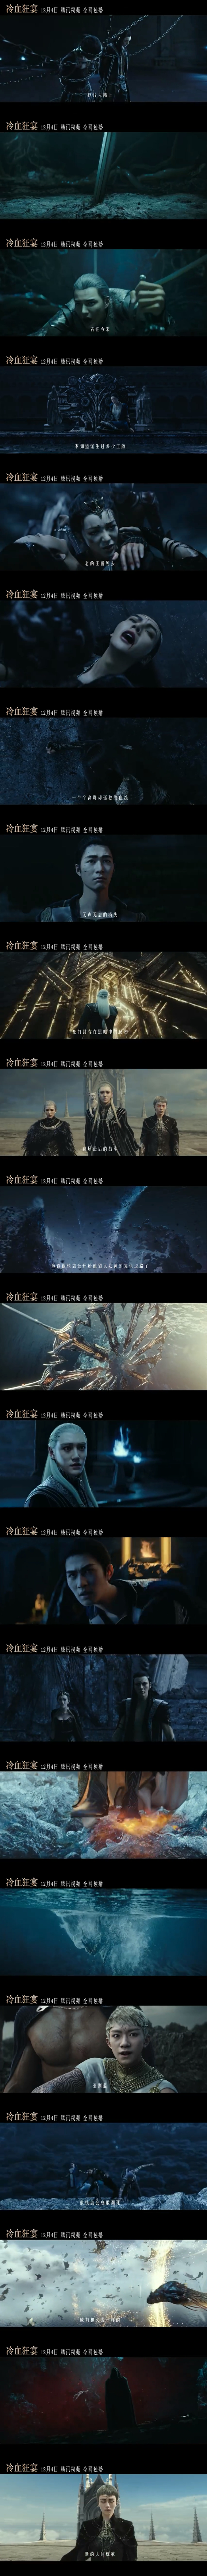 郭敬明爵迹第二部《冷血狂宴》预告公布，将于12月4日在流媒体上映。_图片 No.2